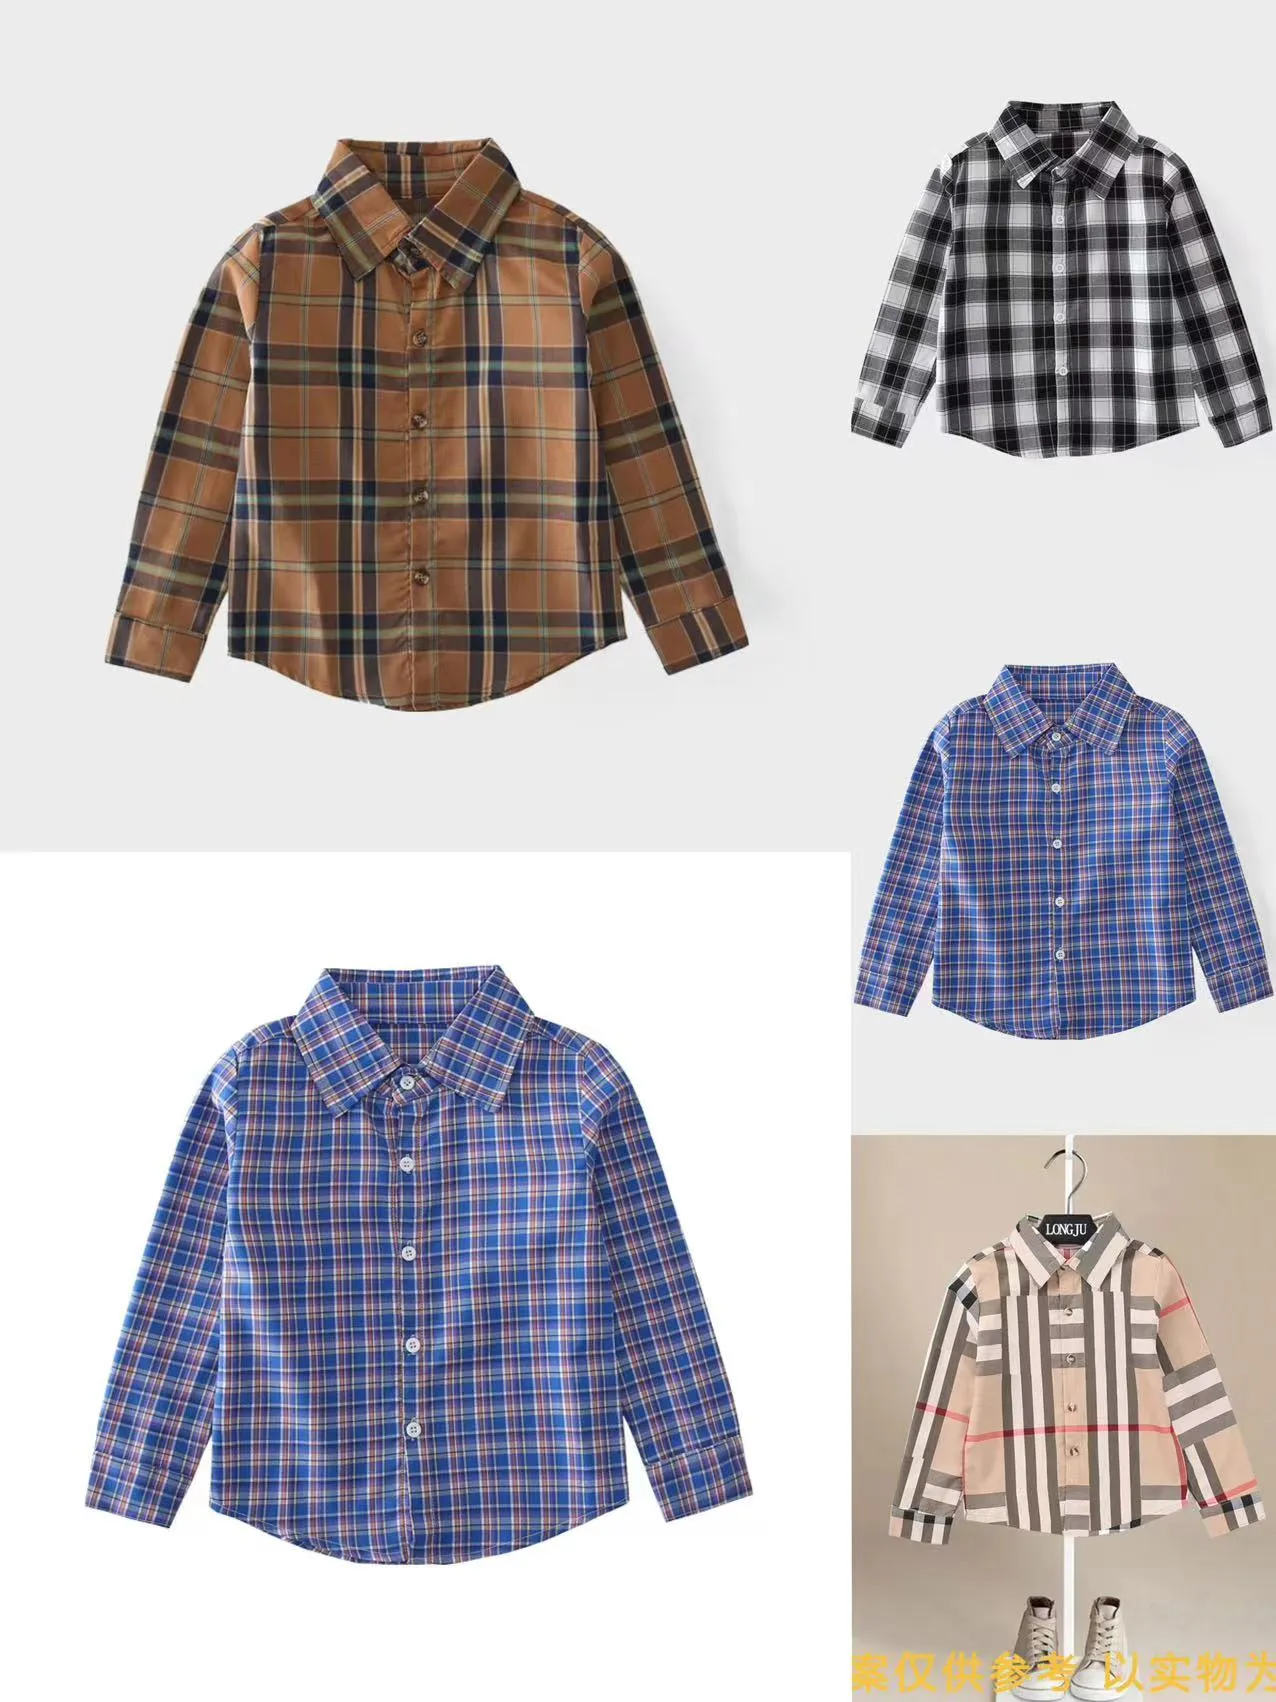 boy shirt blue color designer kid fashion winter clothes wholesale cotton material child girls shirts clothe 90-170 cm